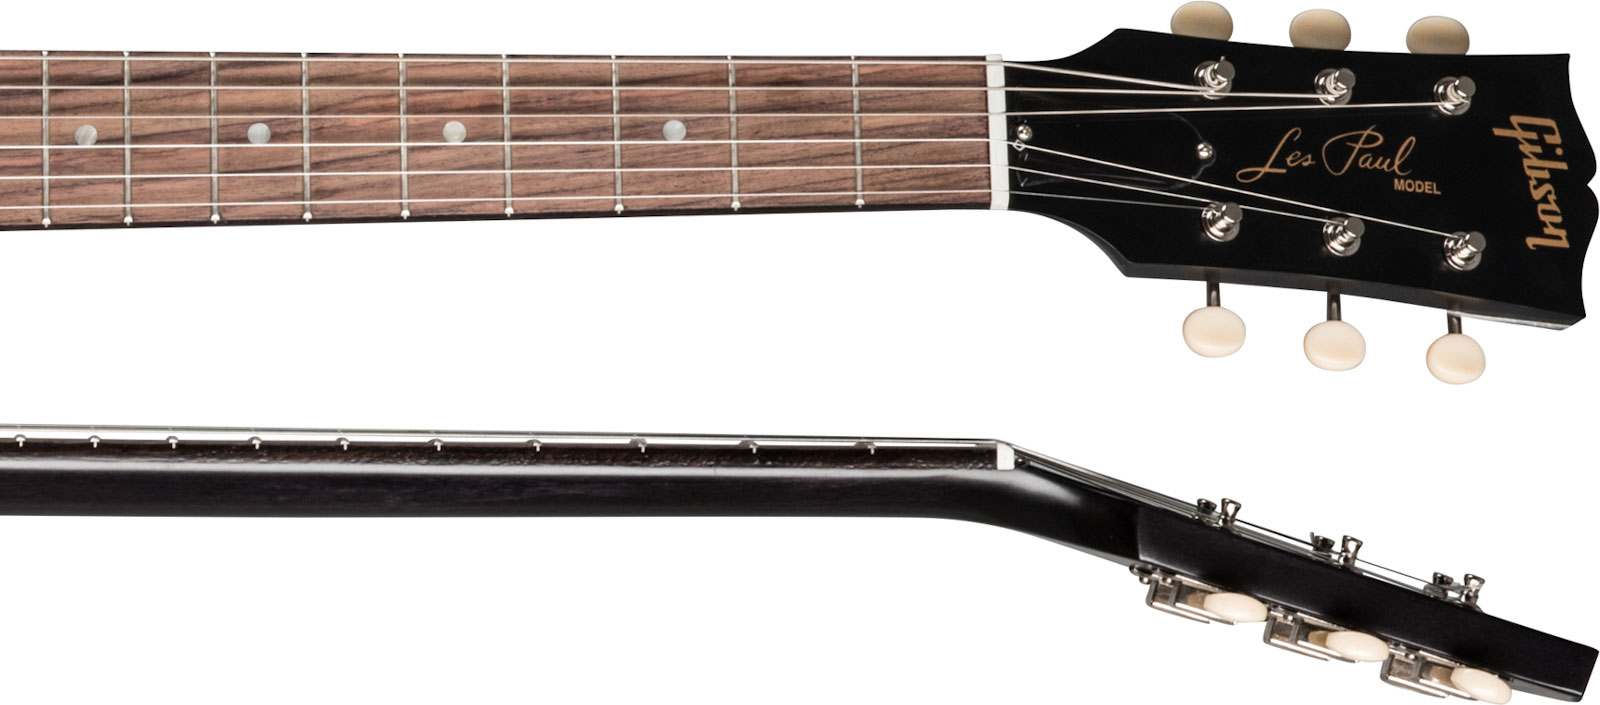 Gibson Les Paul Junior Tribute Dc Modern P90 - Worn Ebony - Guitarra eléctrica de doble corte. - Variation 3